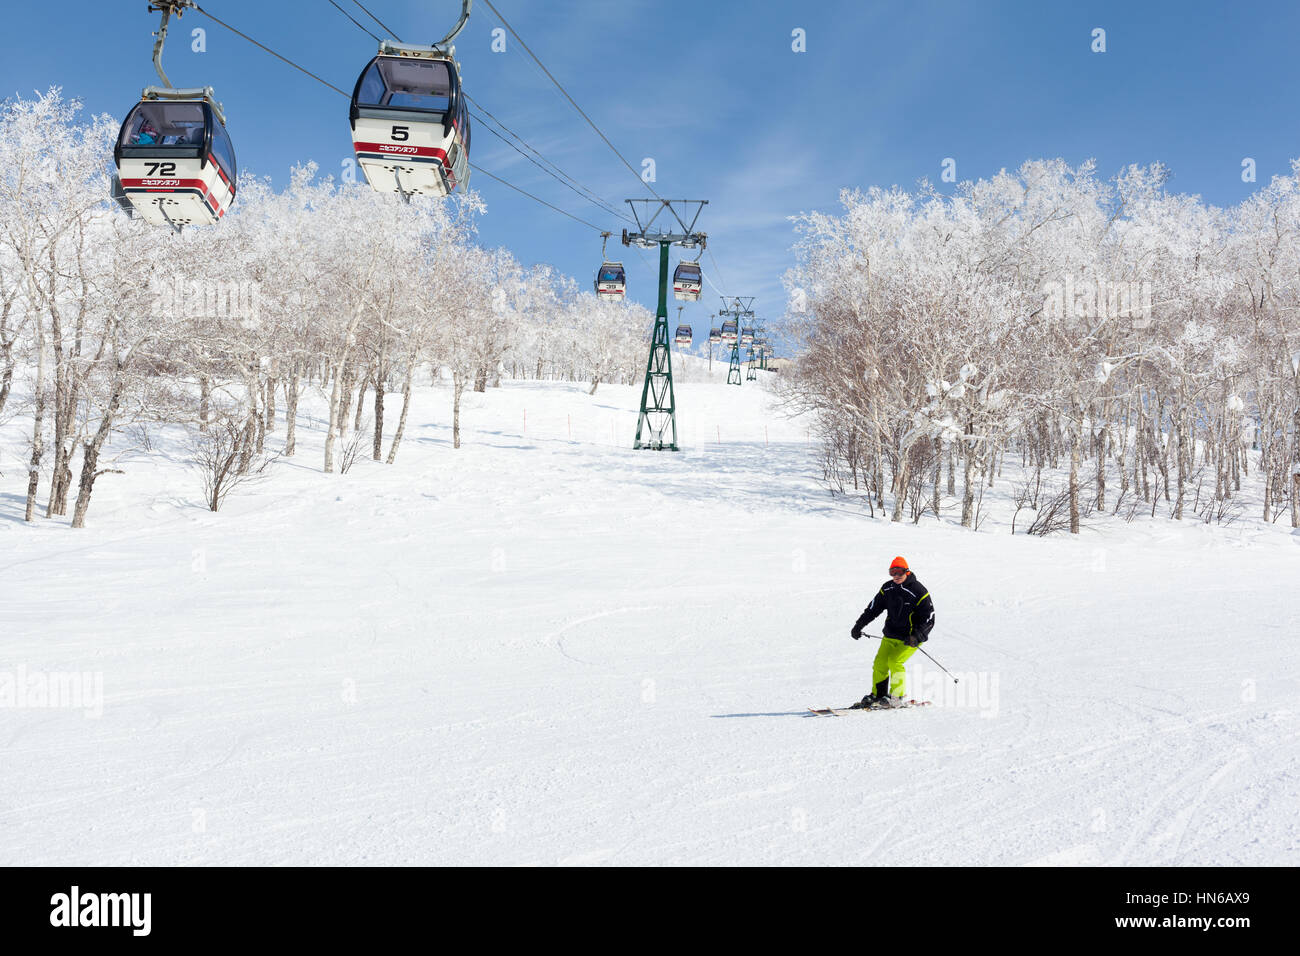 NISEKO, Giappone - 9 marzo : un uomo sci passato una funivia in Niseko Annupuri ski resort il 9 marzo 2012. Niseko è una grande stazione sciistica situata sul Foto Stock